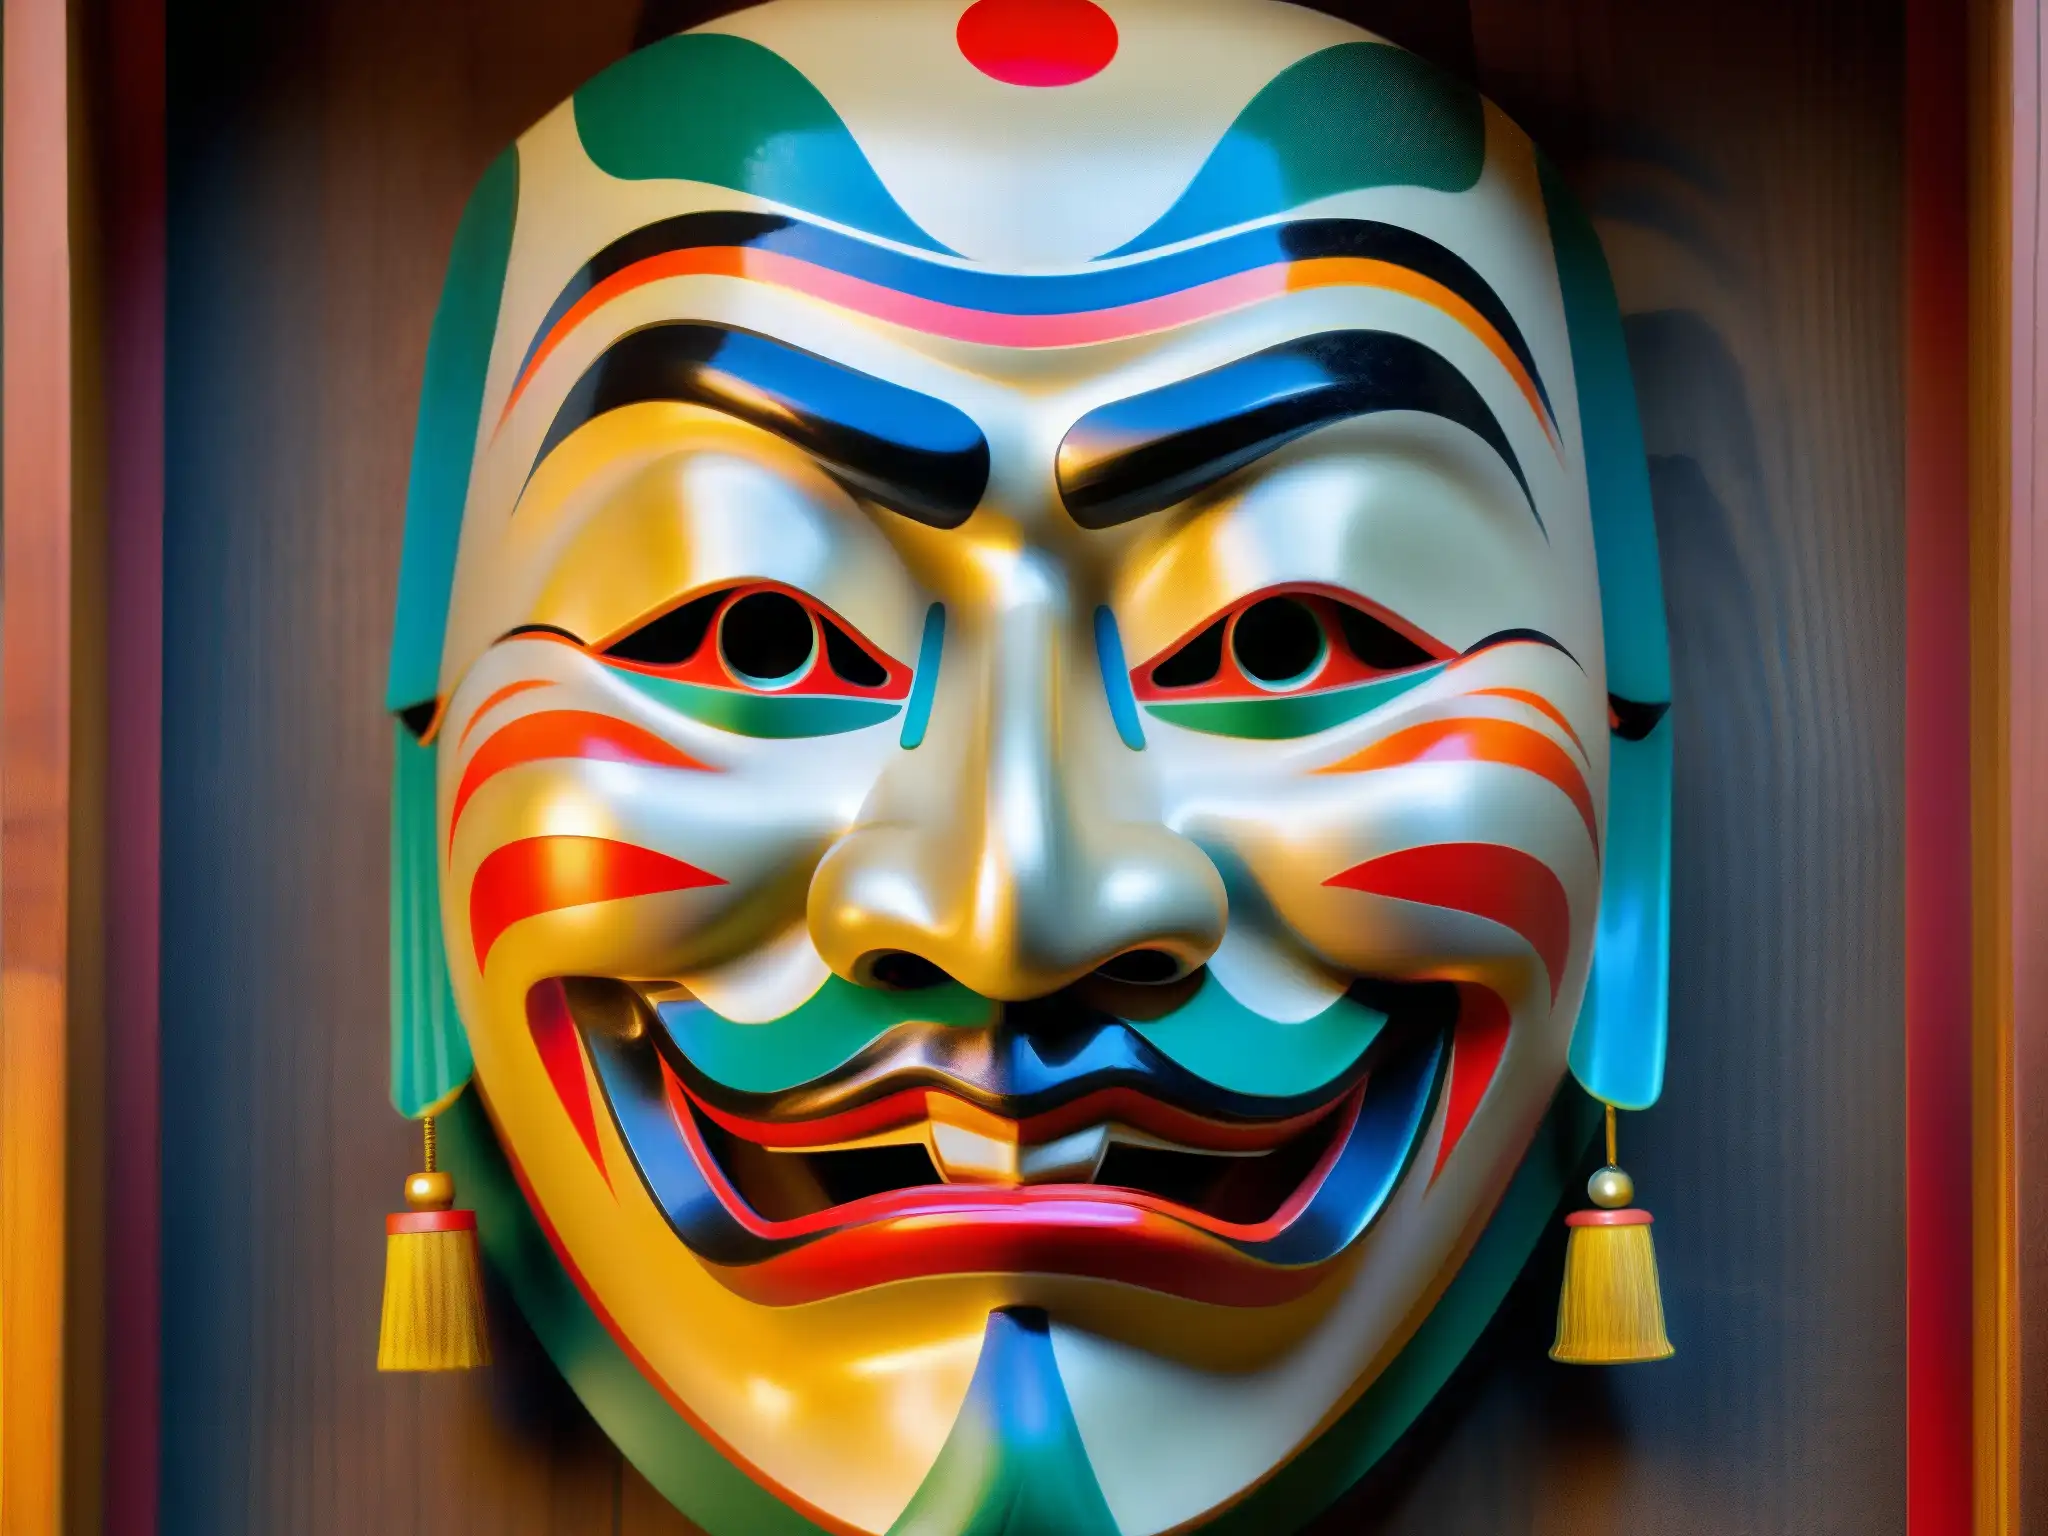 Una máscara Noh japonesa tallada en madera, con colores vibrantes que representan un ser mítico del folklore japonés